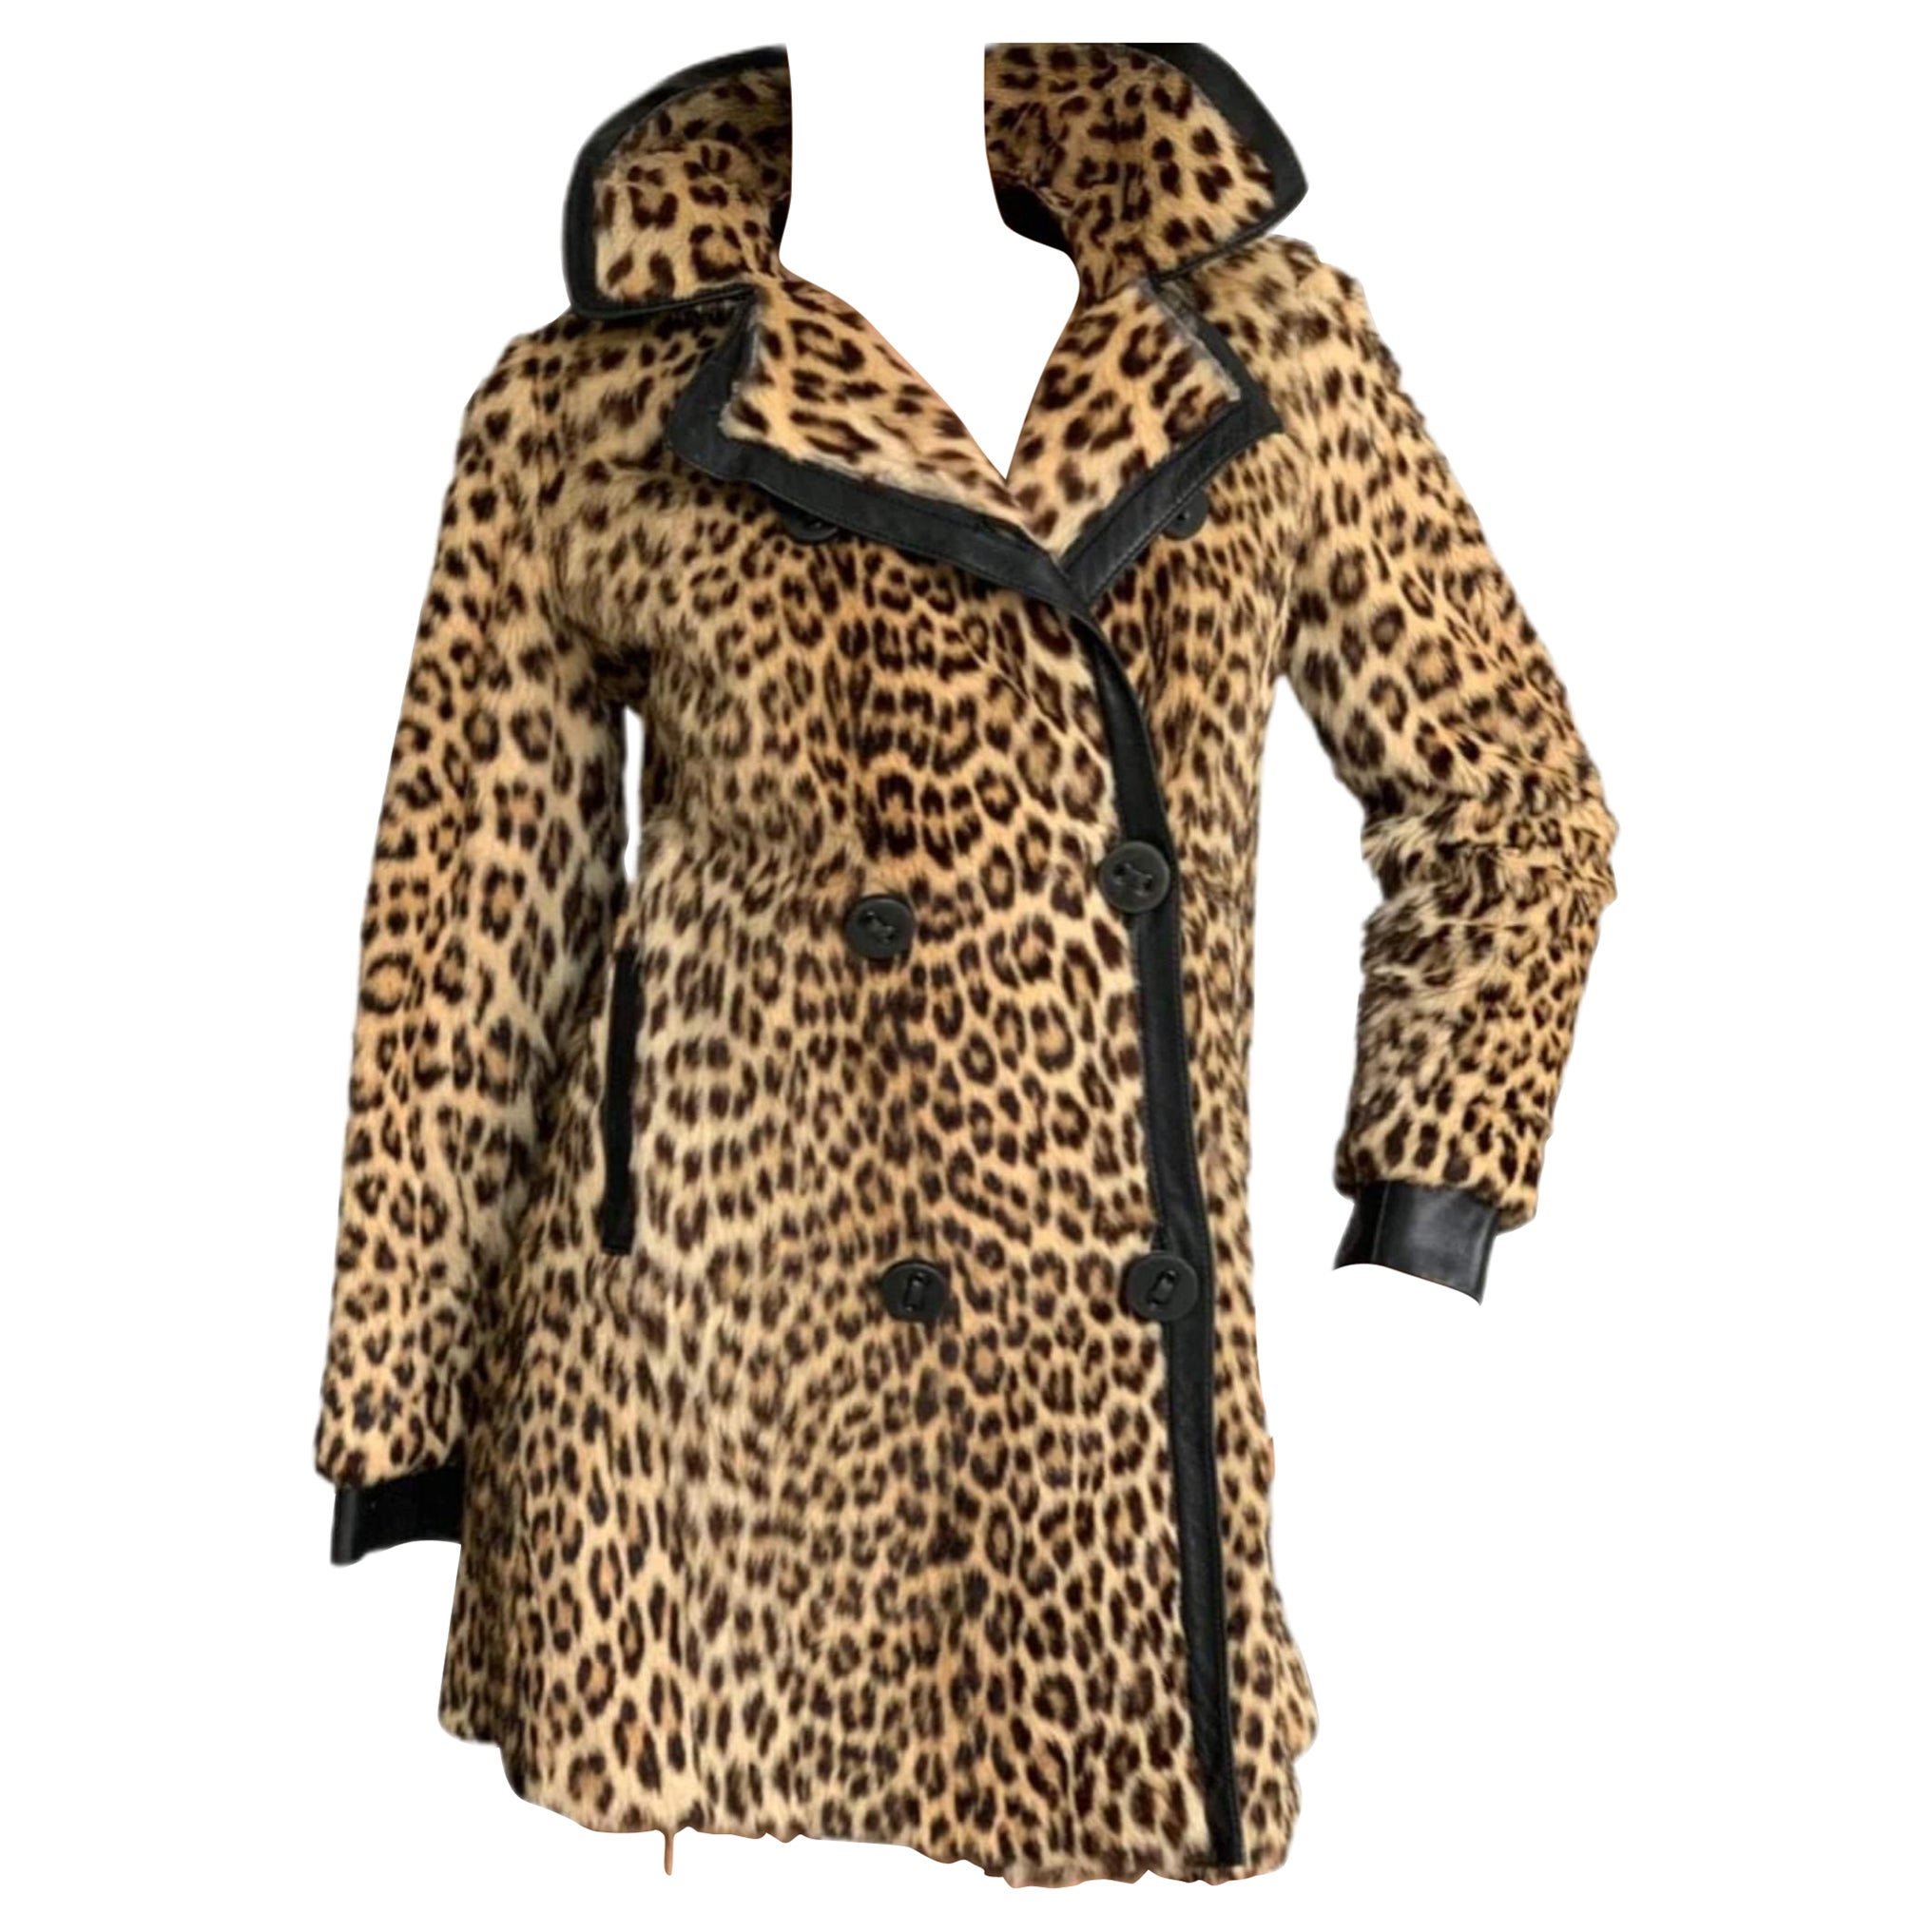 Mint Vintage Leopard fur coat size 8-10